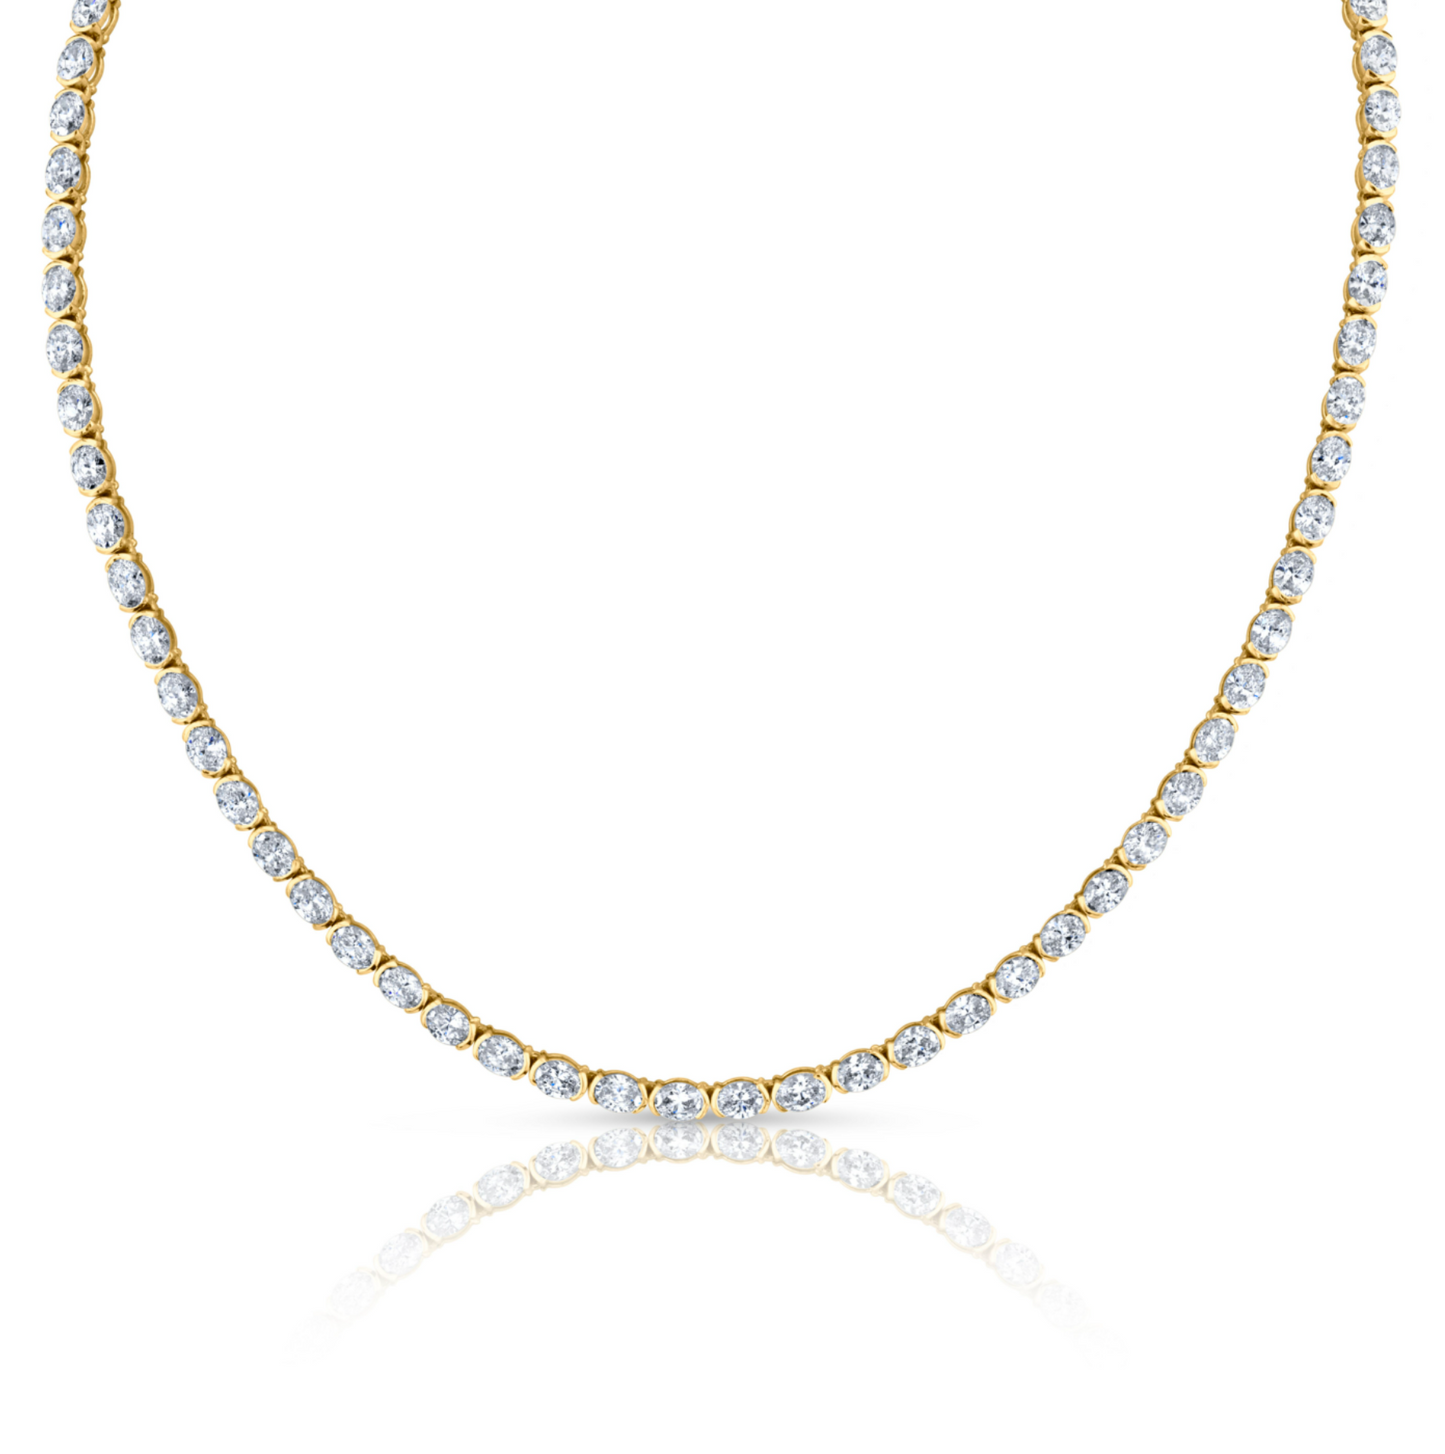 14.65 Carat Oval Cut Diamond Necklace